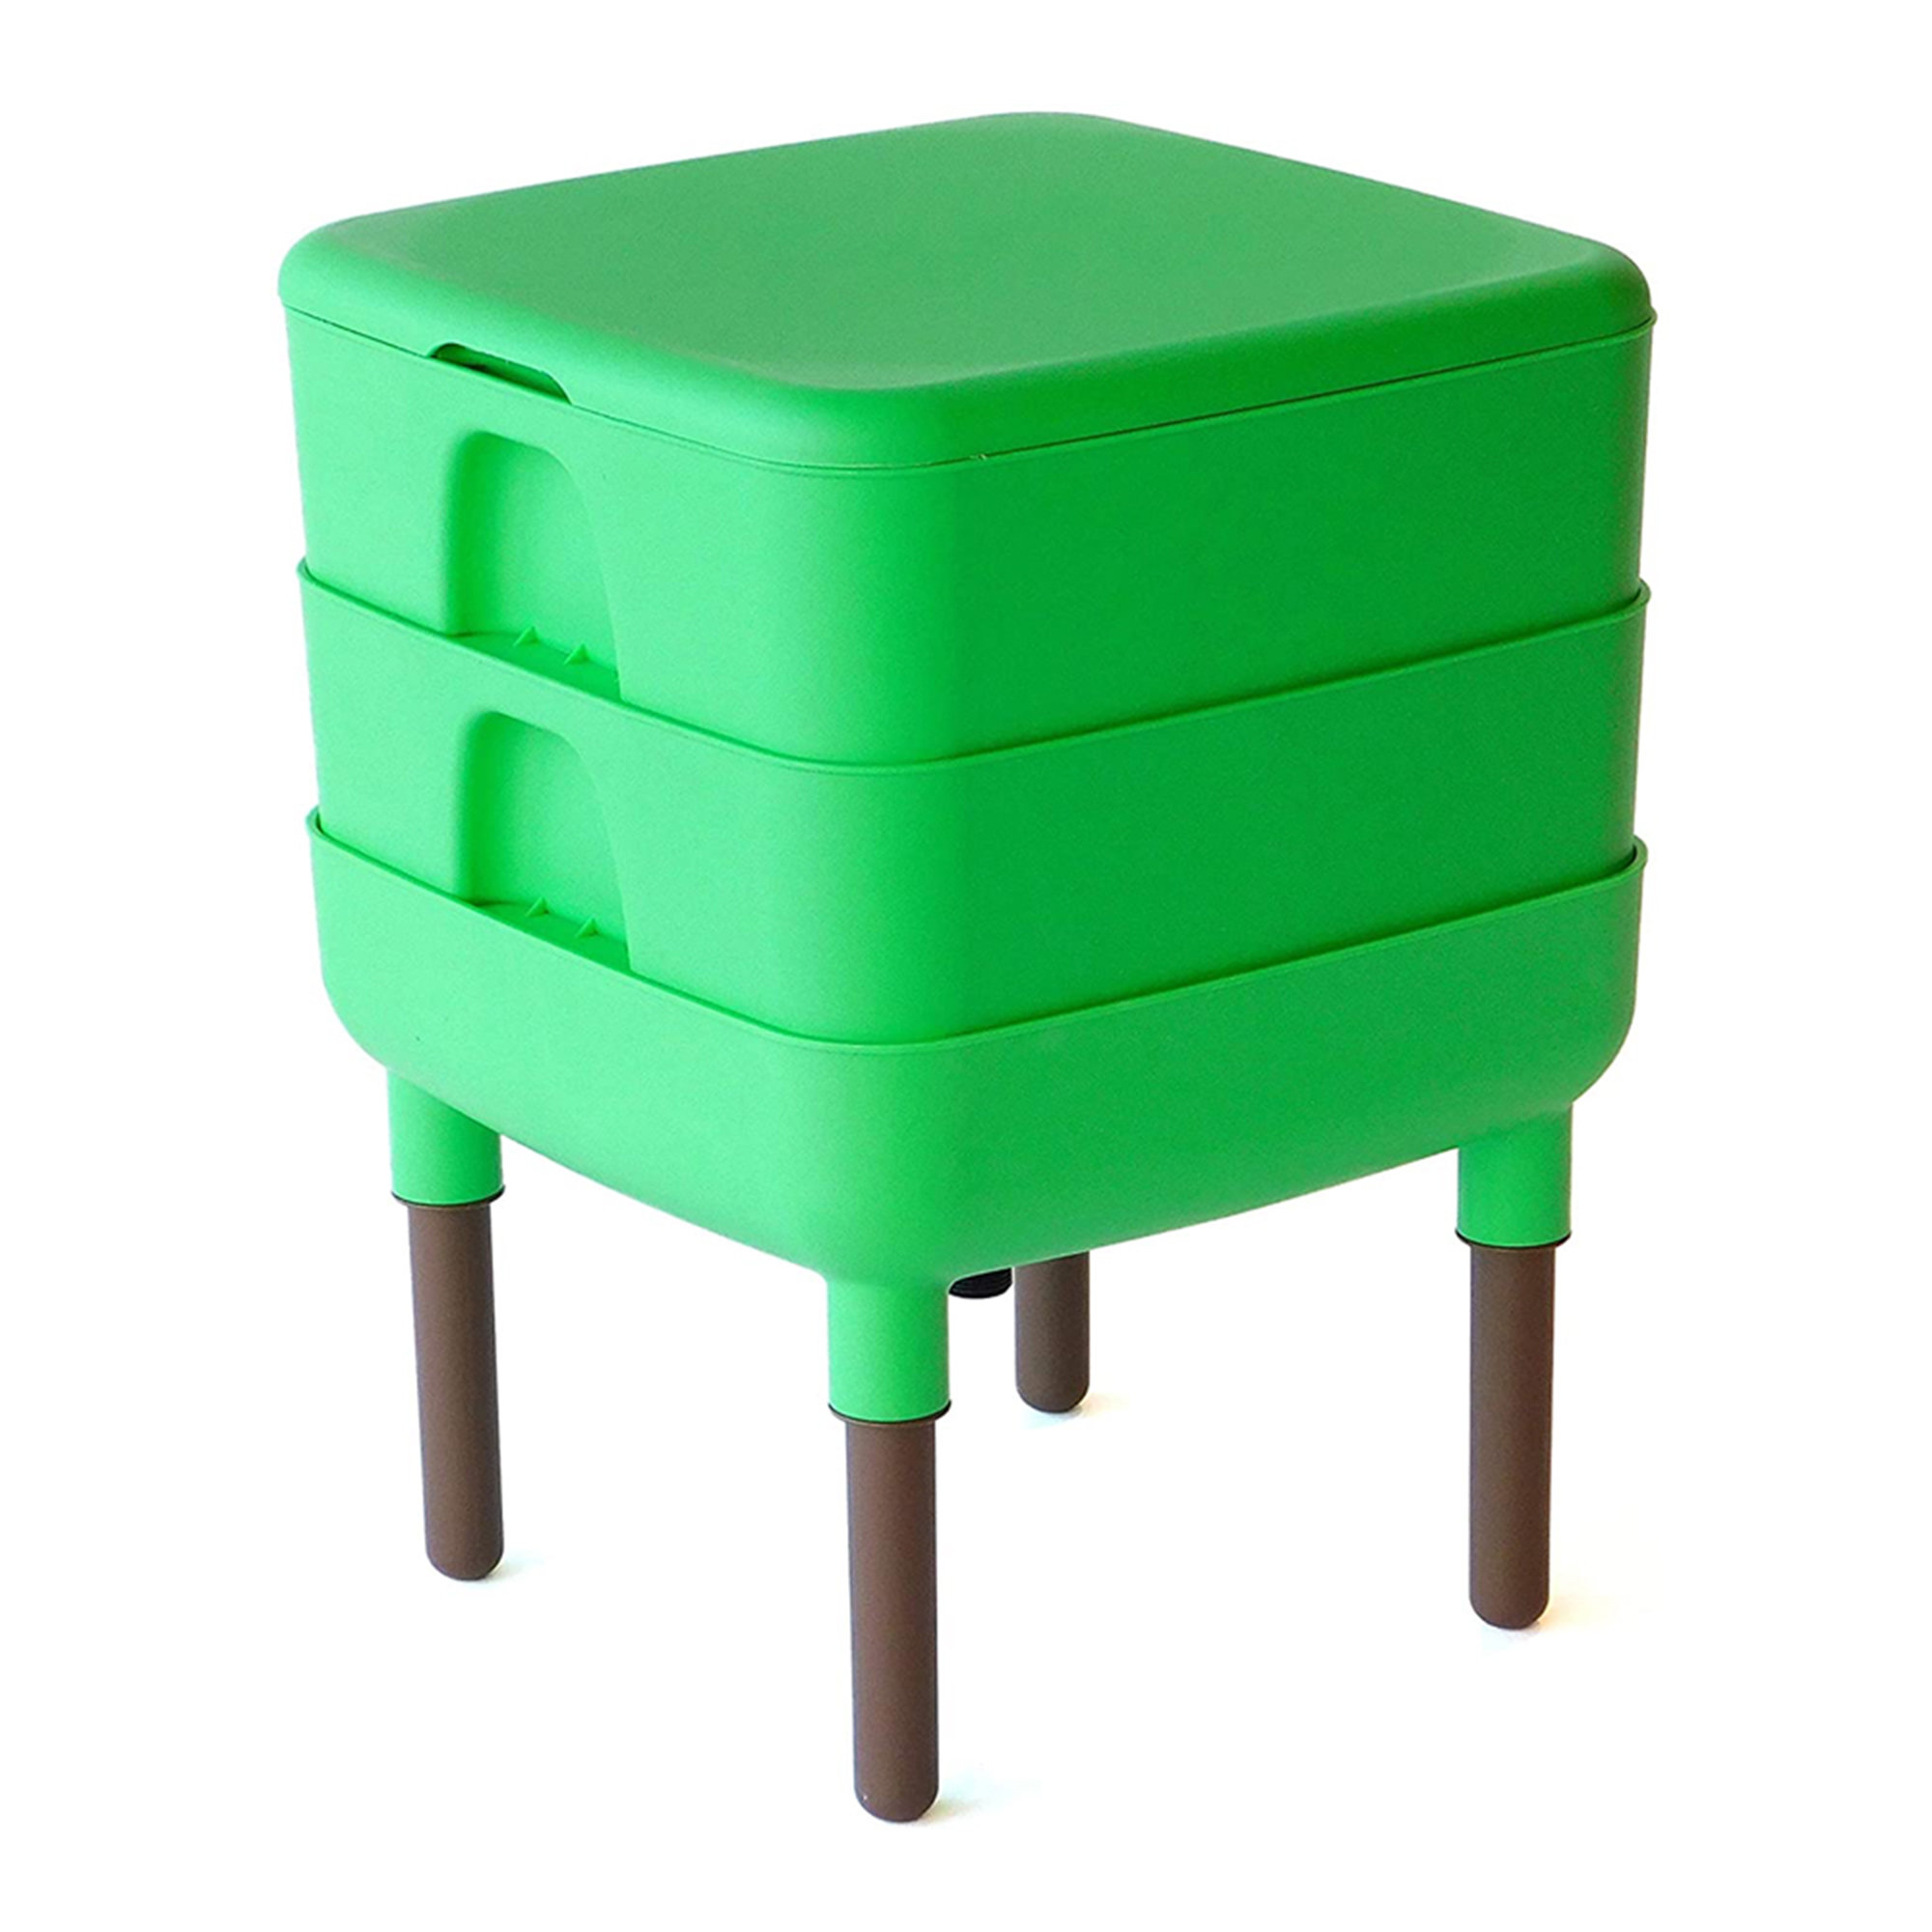 https://assets.wfcdn.com/im/79140159/compr-r85/2484/248460955/fcmp-outdoor-essential-living-6-gallon-worm-composter-bin-w-garden-trays-green.jpg